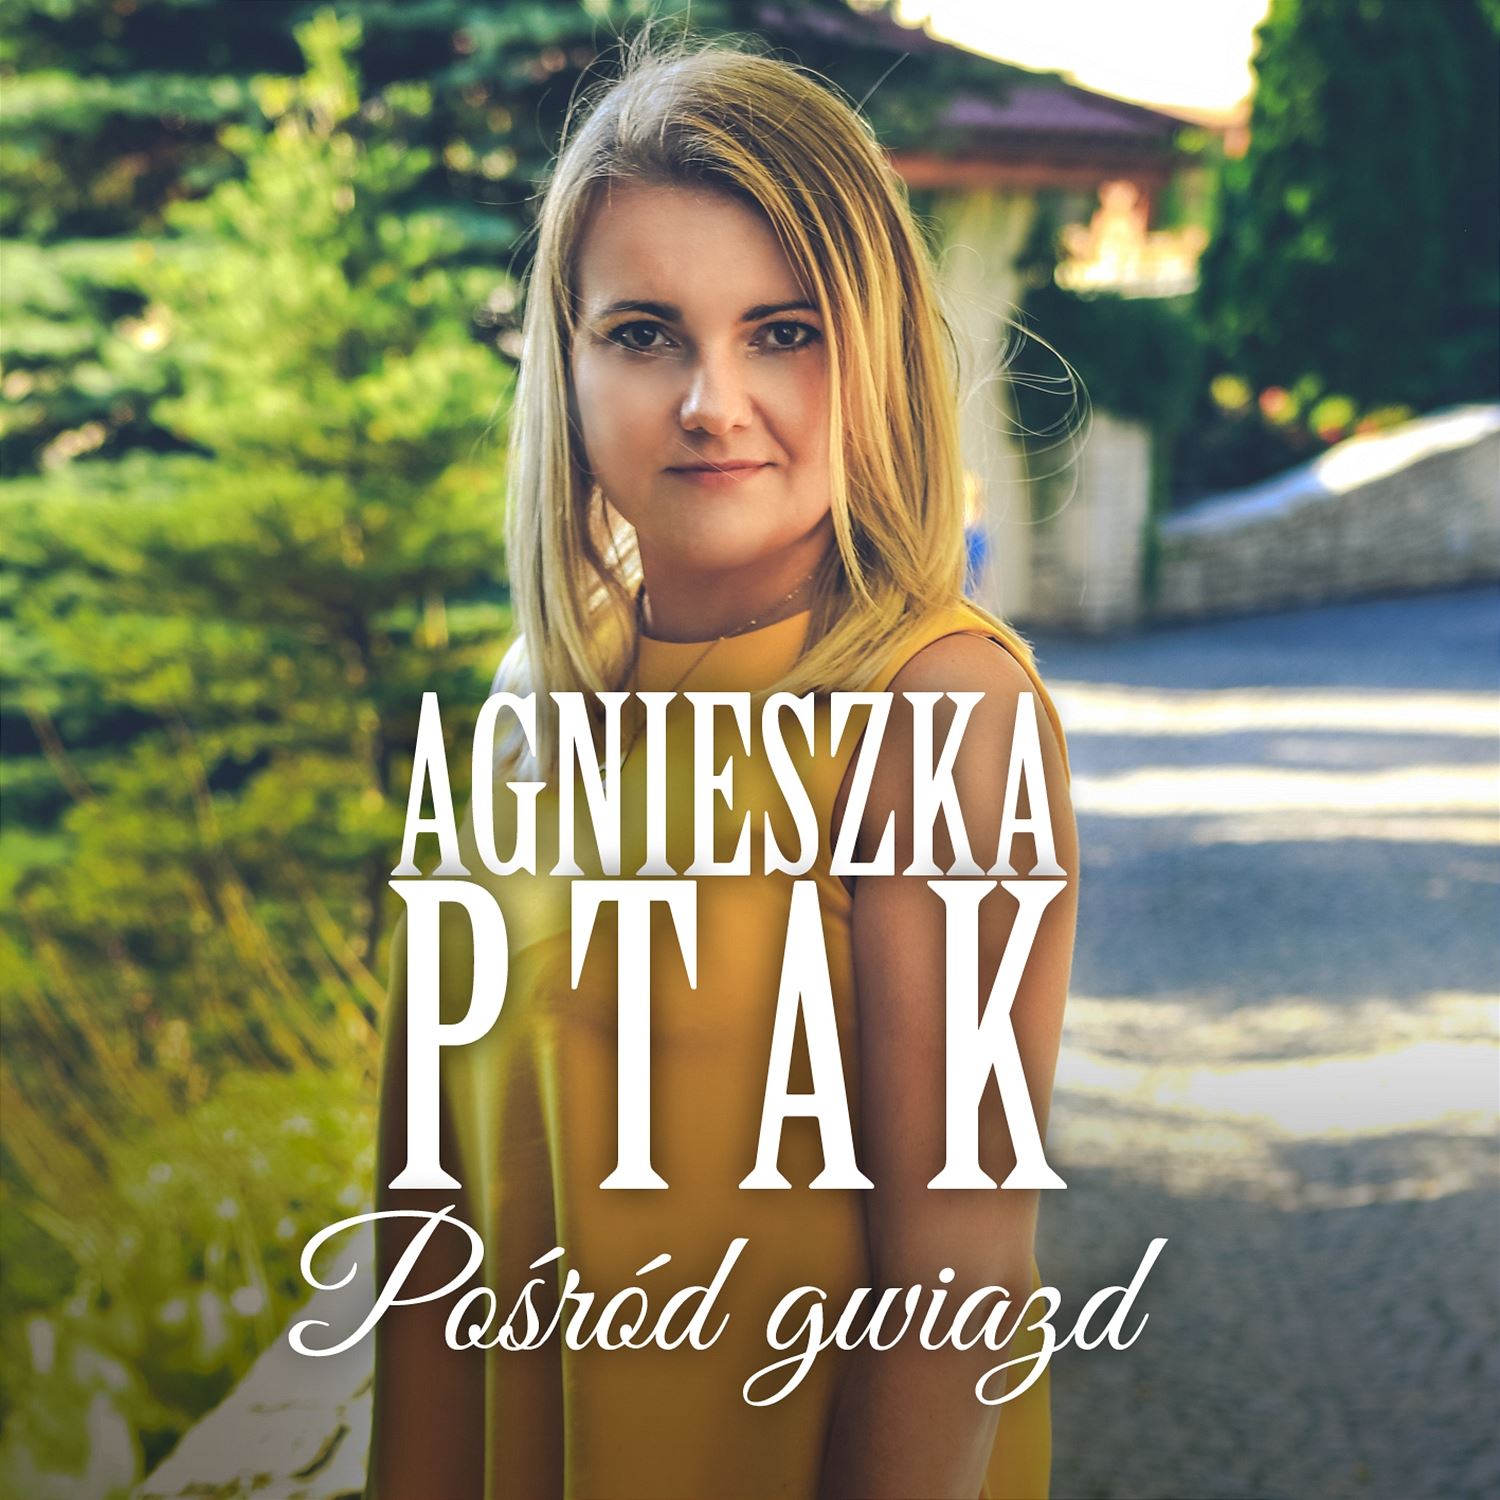 http://www.soundline.biz/AgnieszkaPtakPosrodGwiazd/cover.jpg